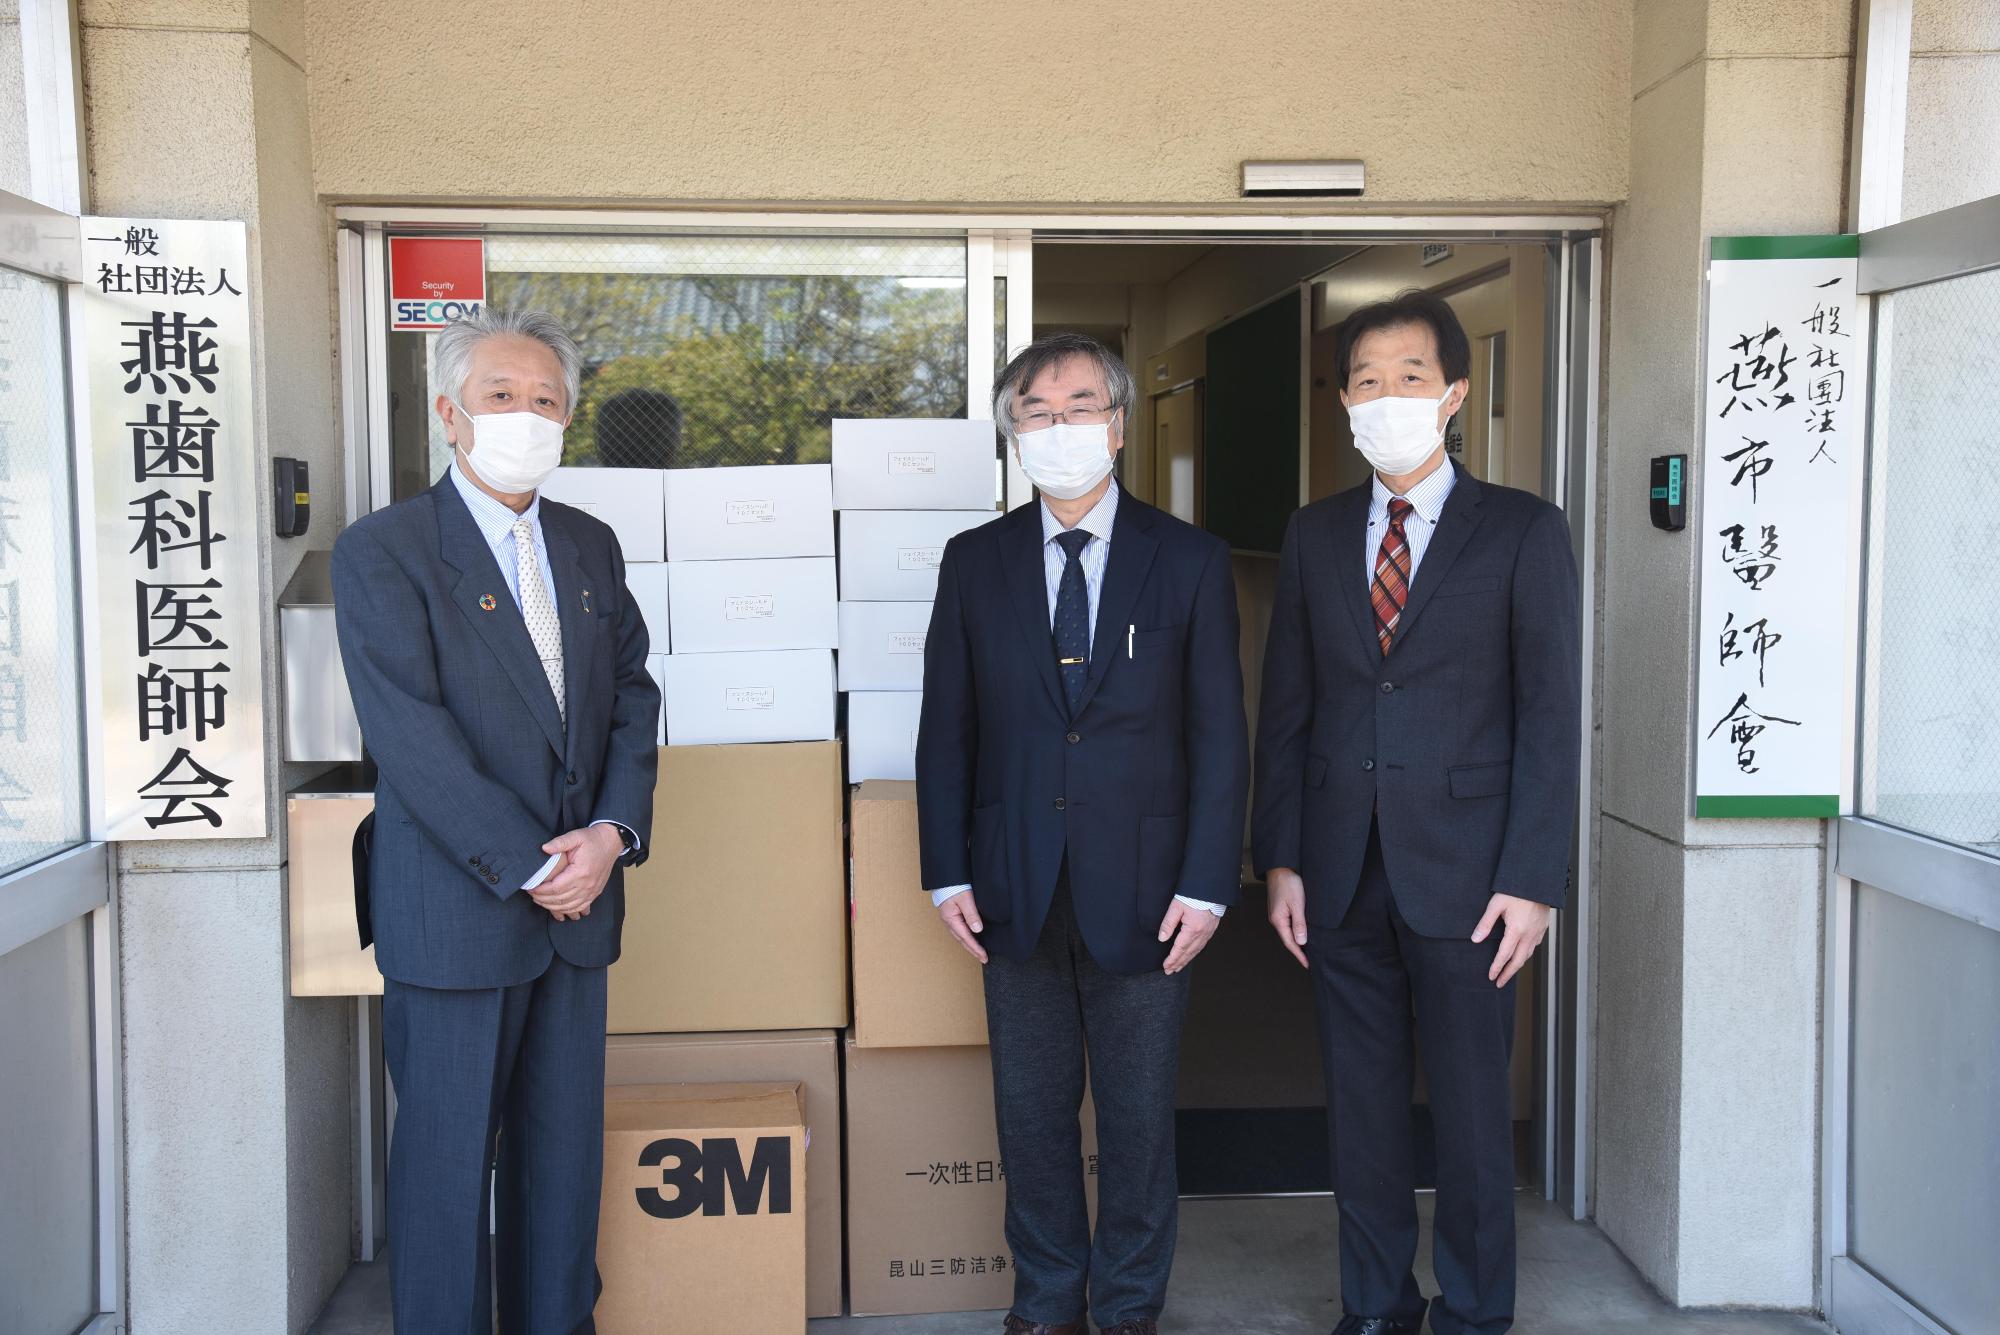 施設入口に積まれた段ボールとマスクを着用する役員たちの写真